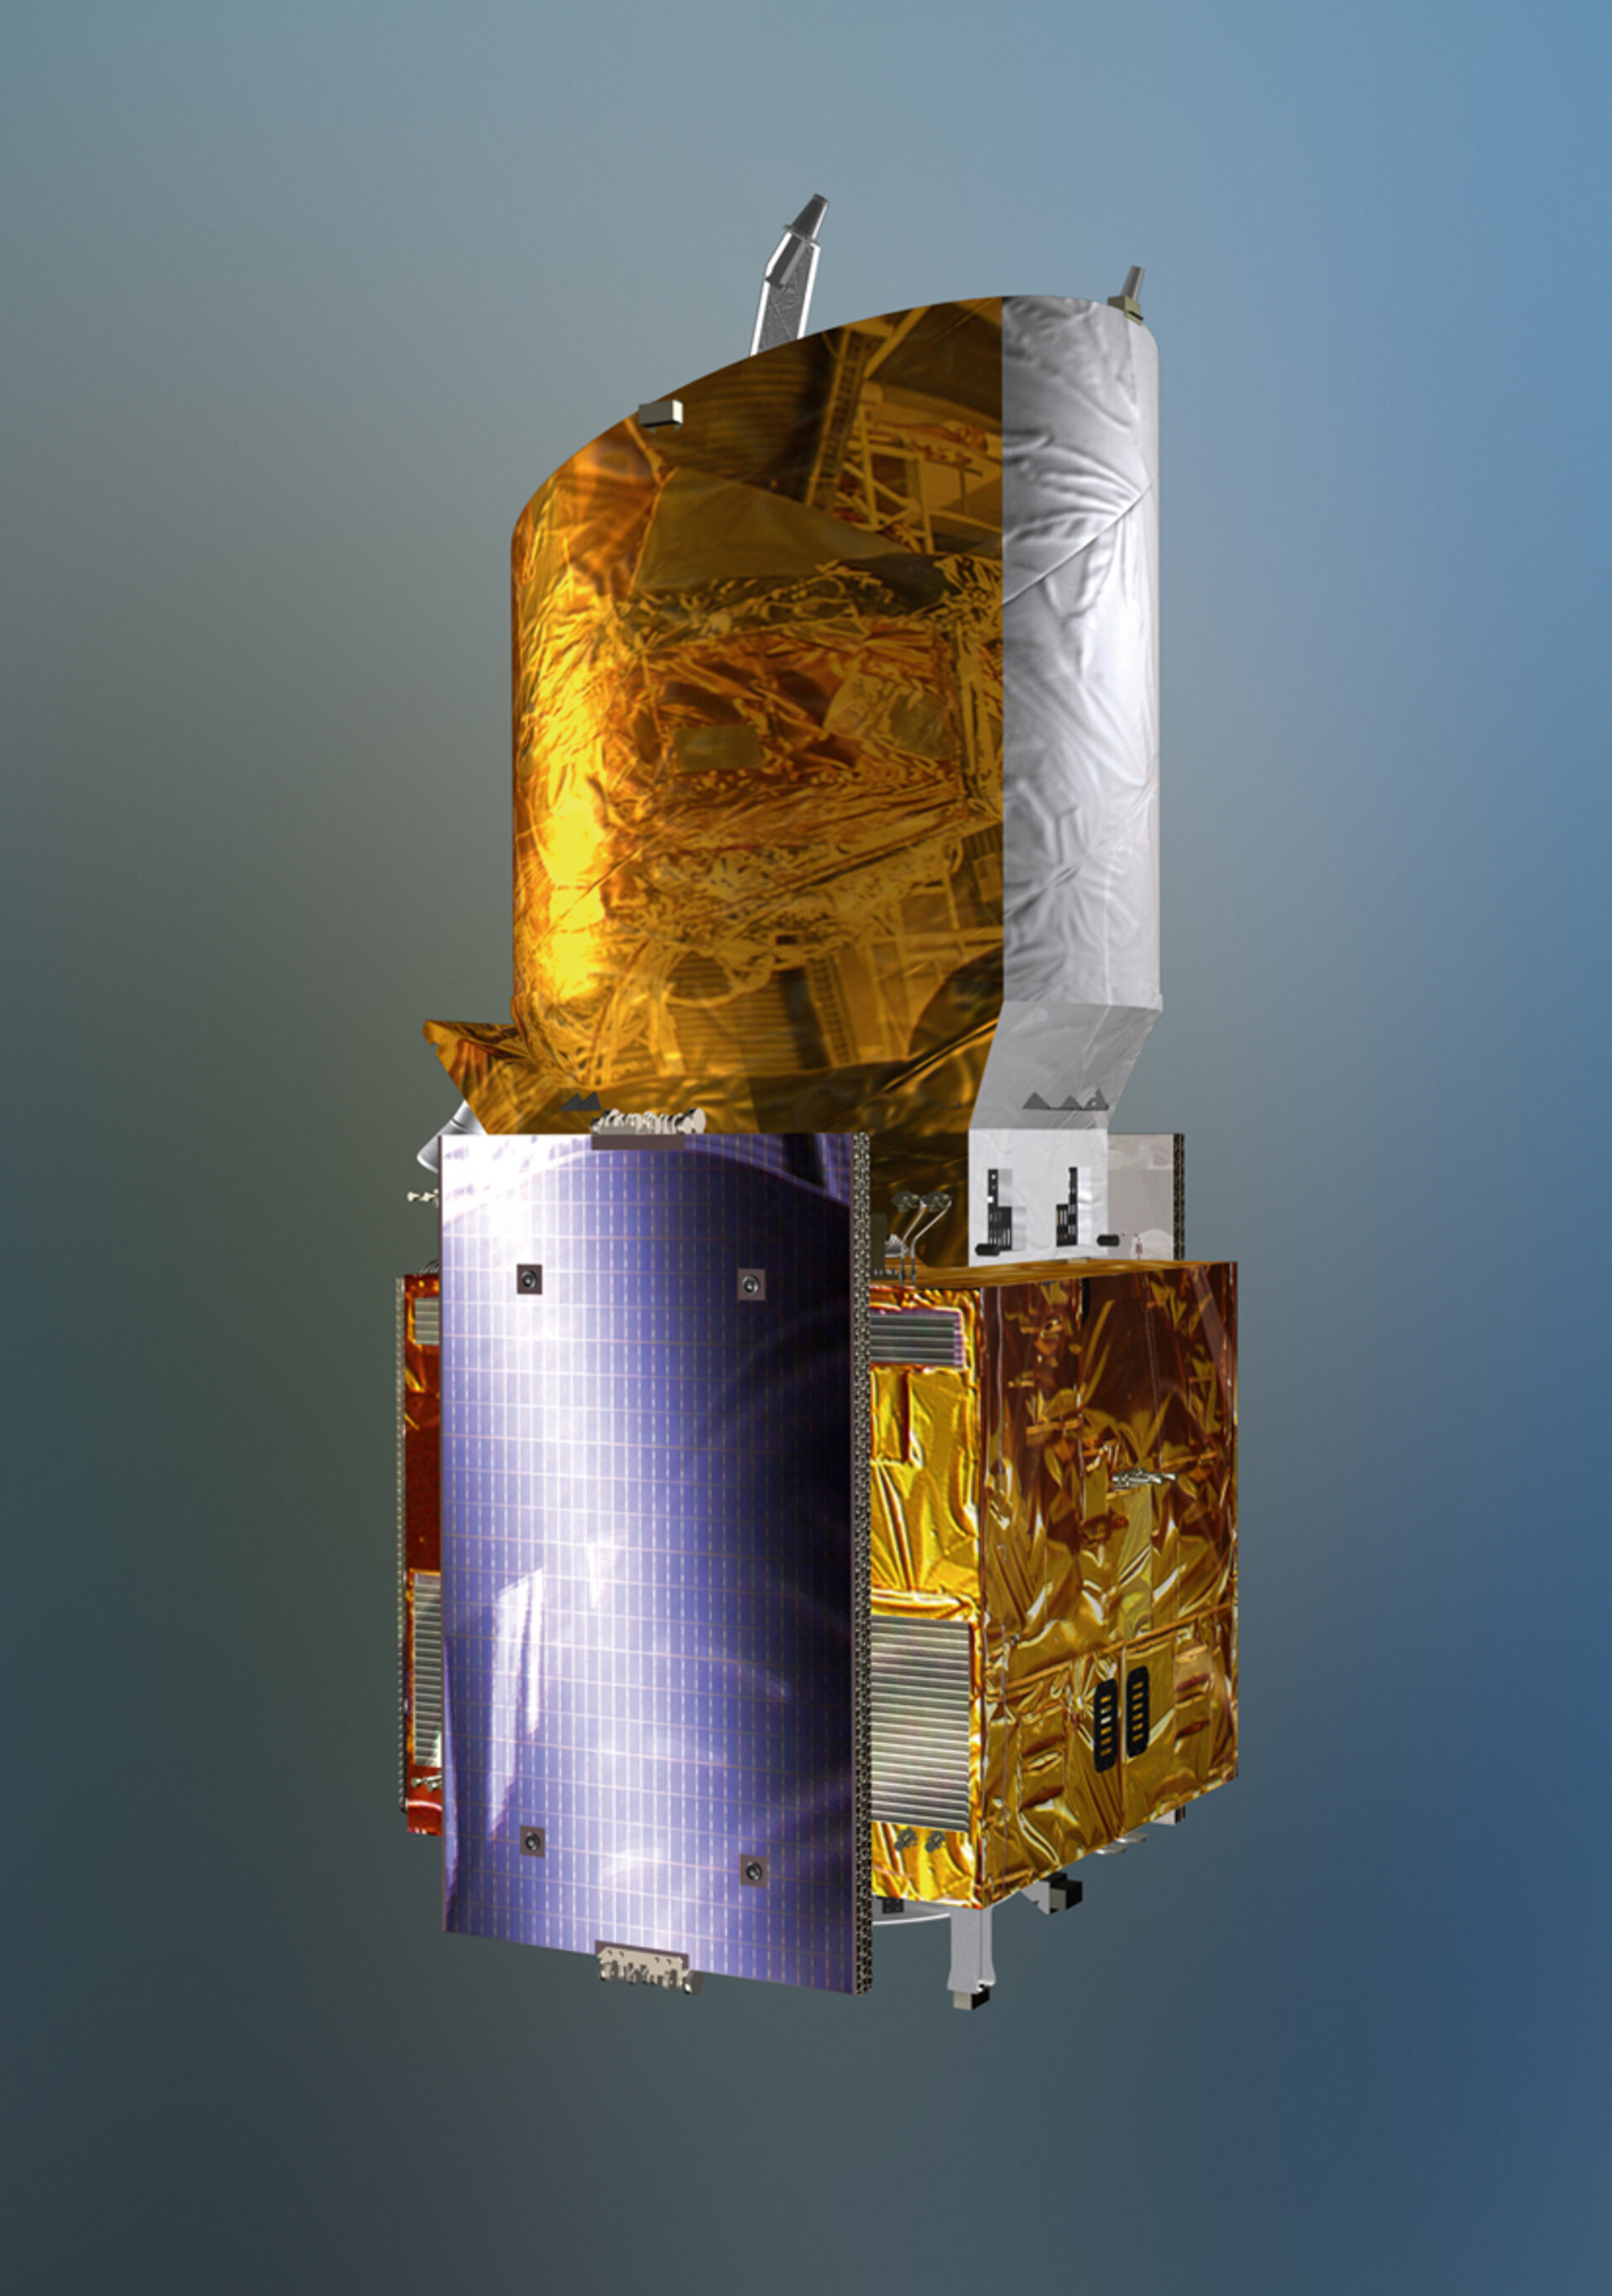 The Aeolus satellite in launch configuration